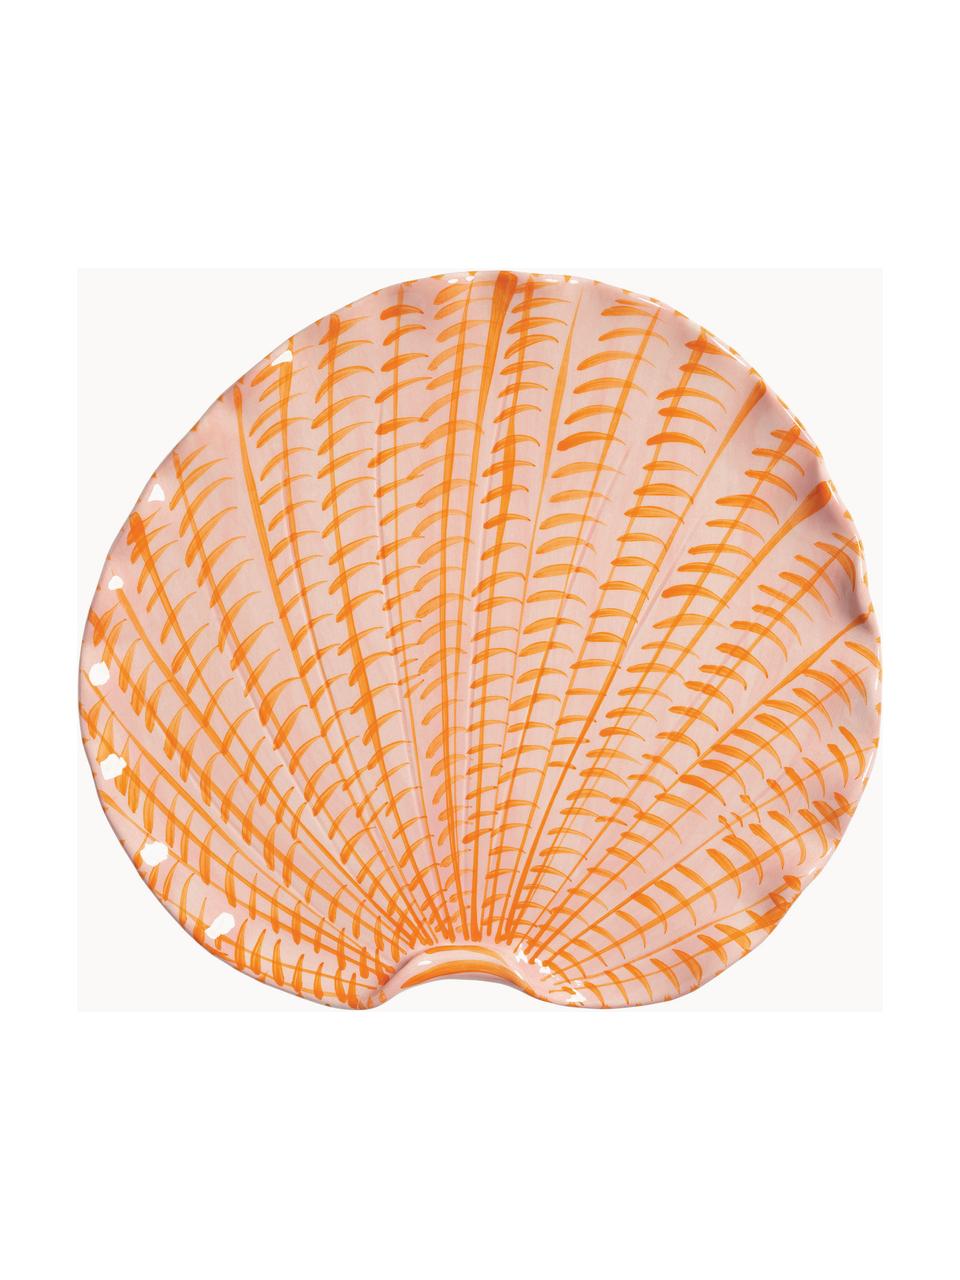 Serveerplateau Shellegance, L 31 cm, Keramiek, geglazuurd, Perzik, sinaasappel, B 31 x D 28 cm